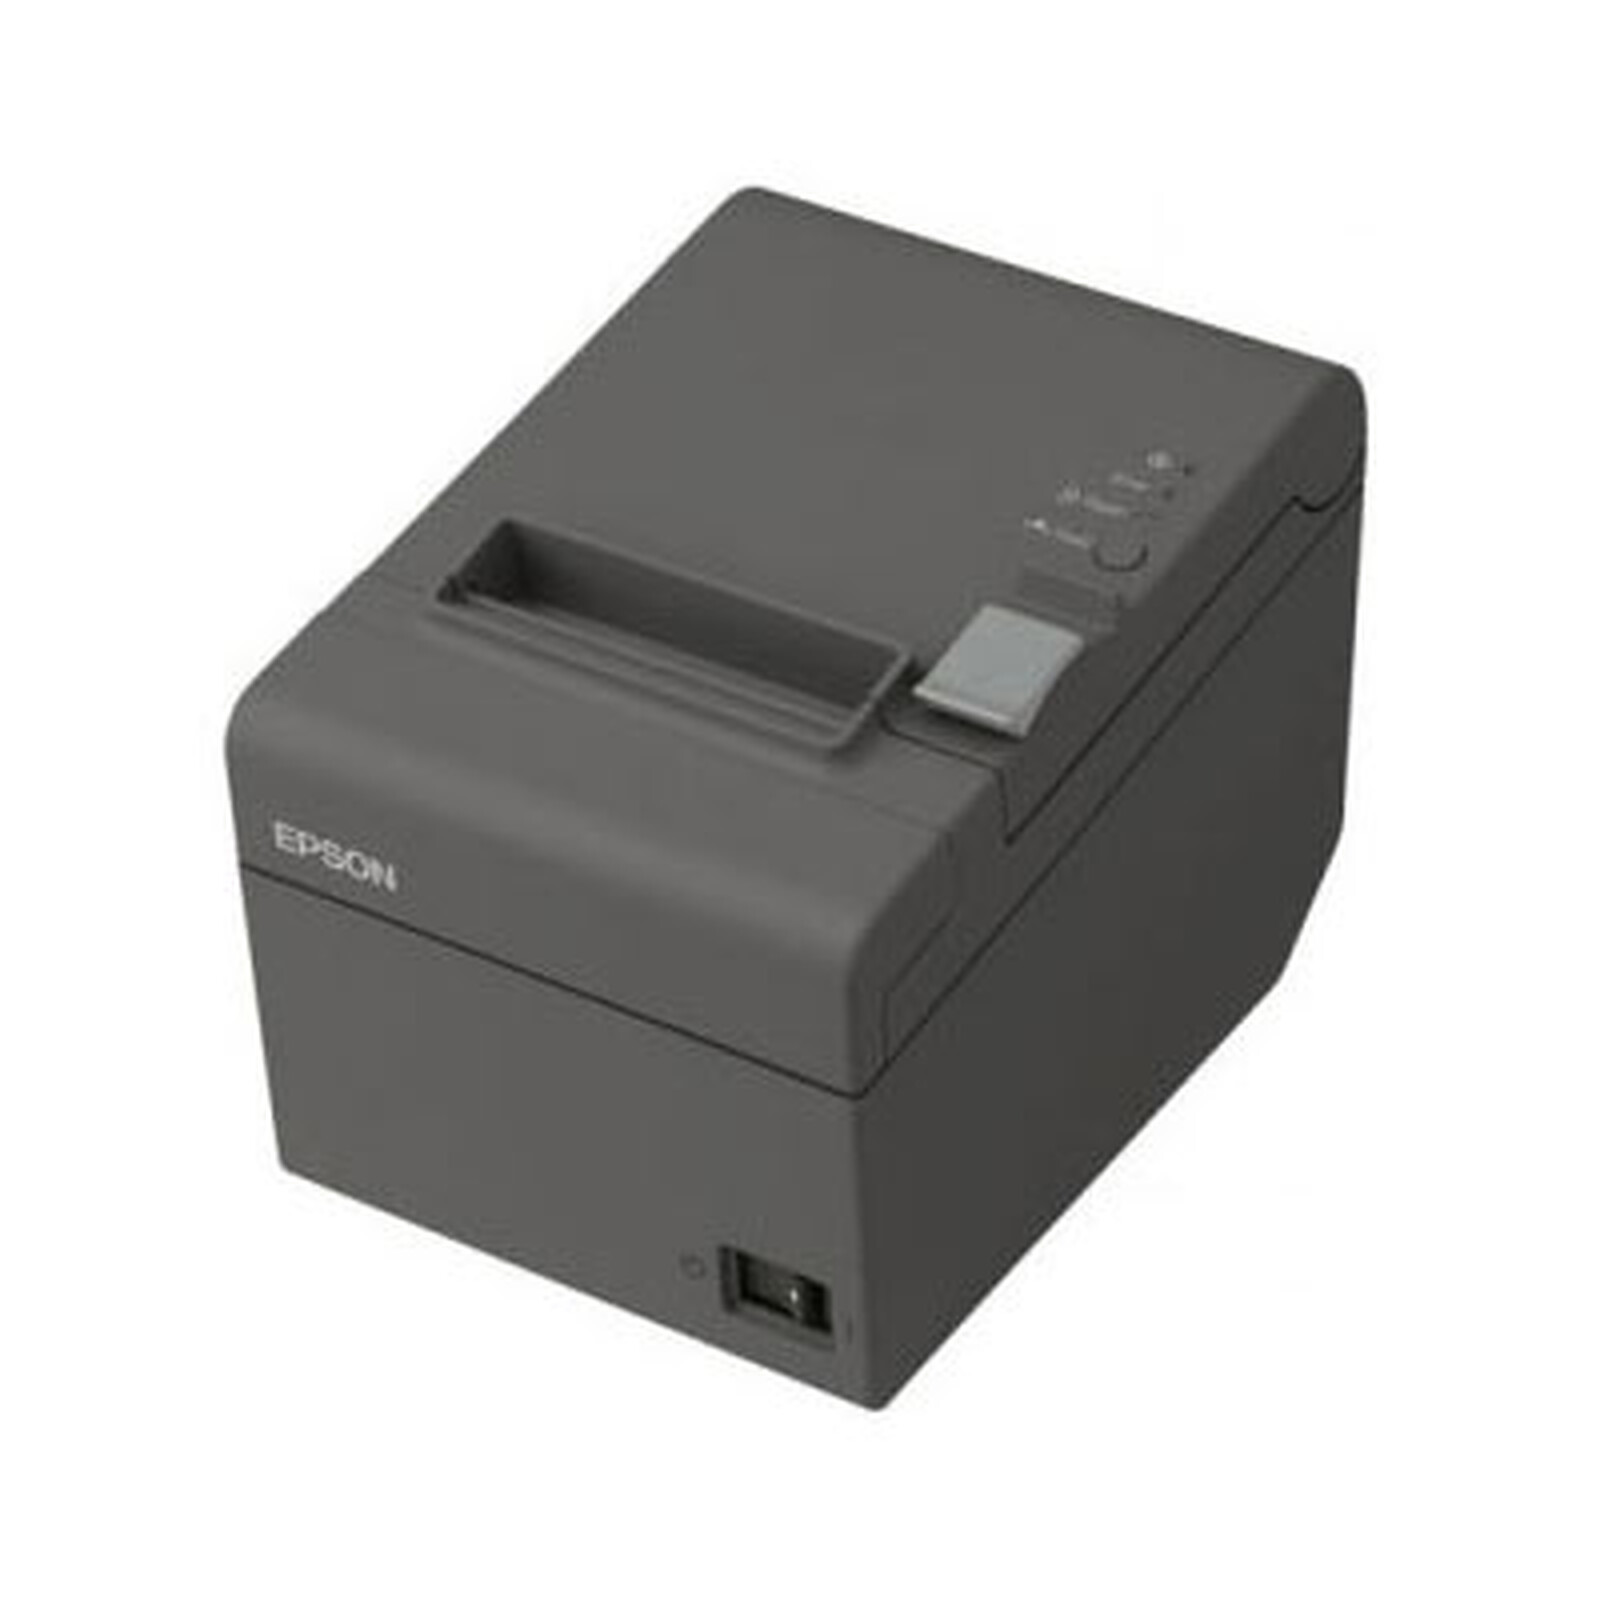 Epson TM-T20II (USB 2.0 / Série) + Datalogic Touch 65 Lite + support + câble  USB - Imprimante thermique - Garantie 3 ans LDLC